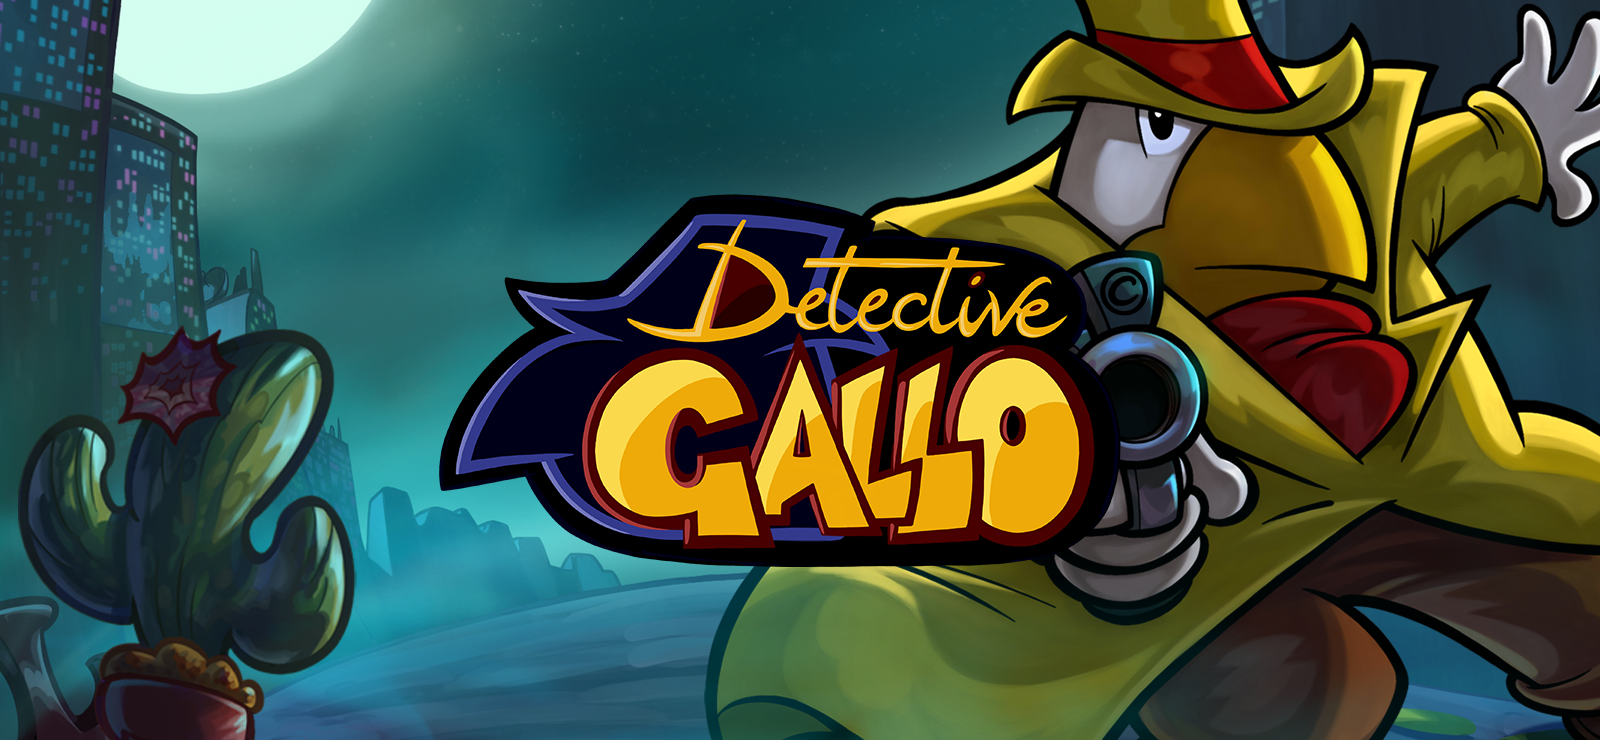 Detective Gallo - Rules